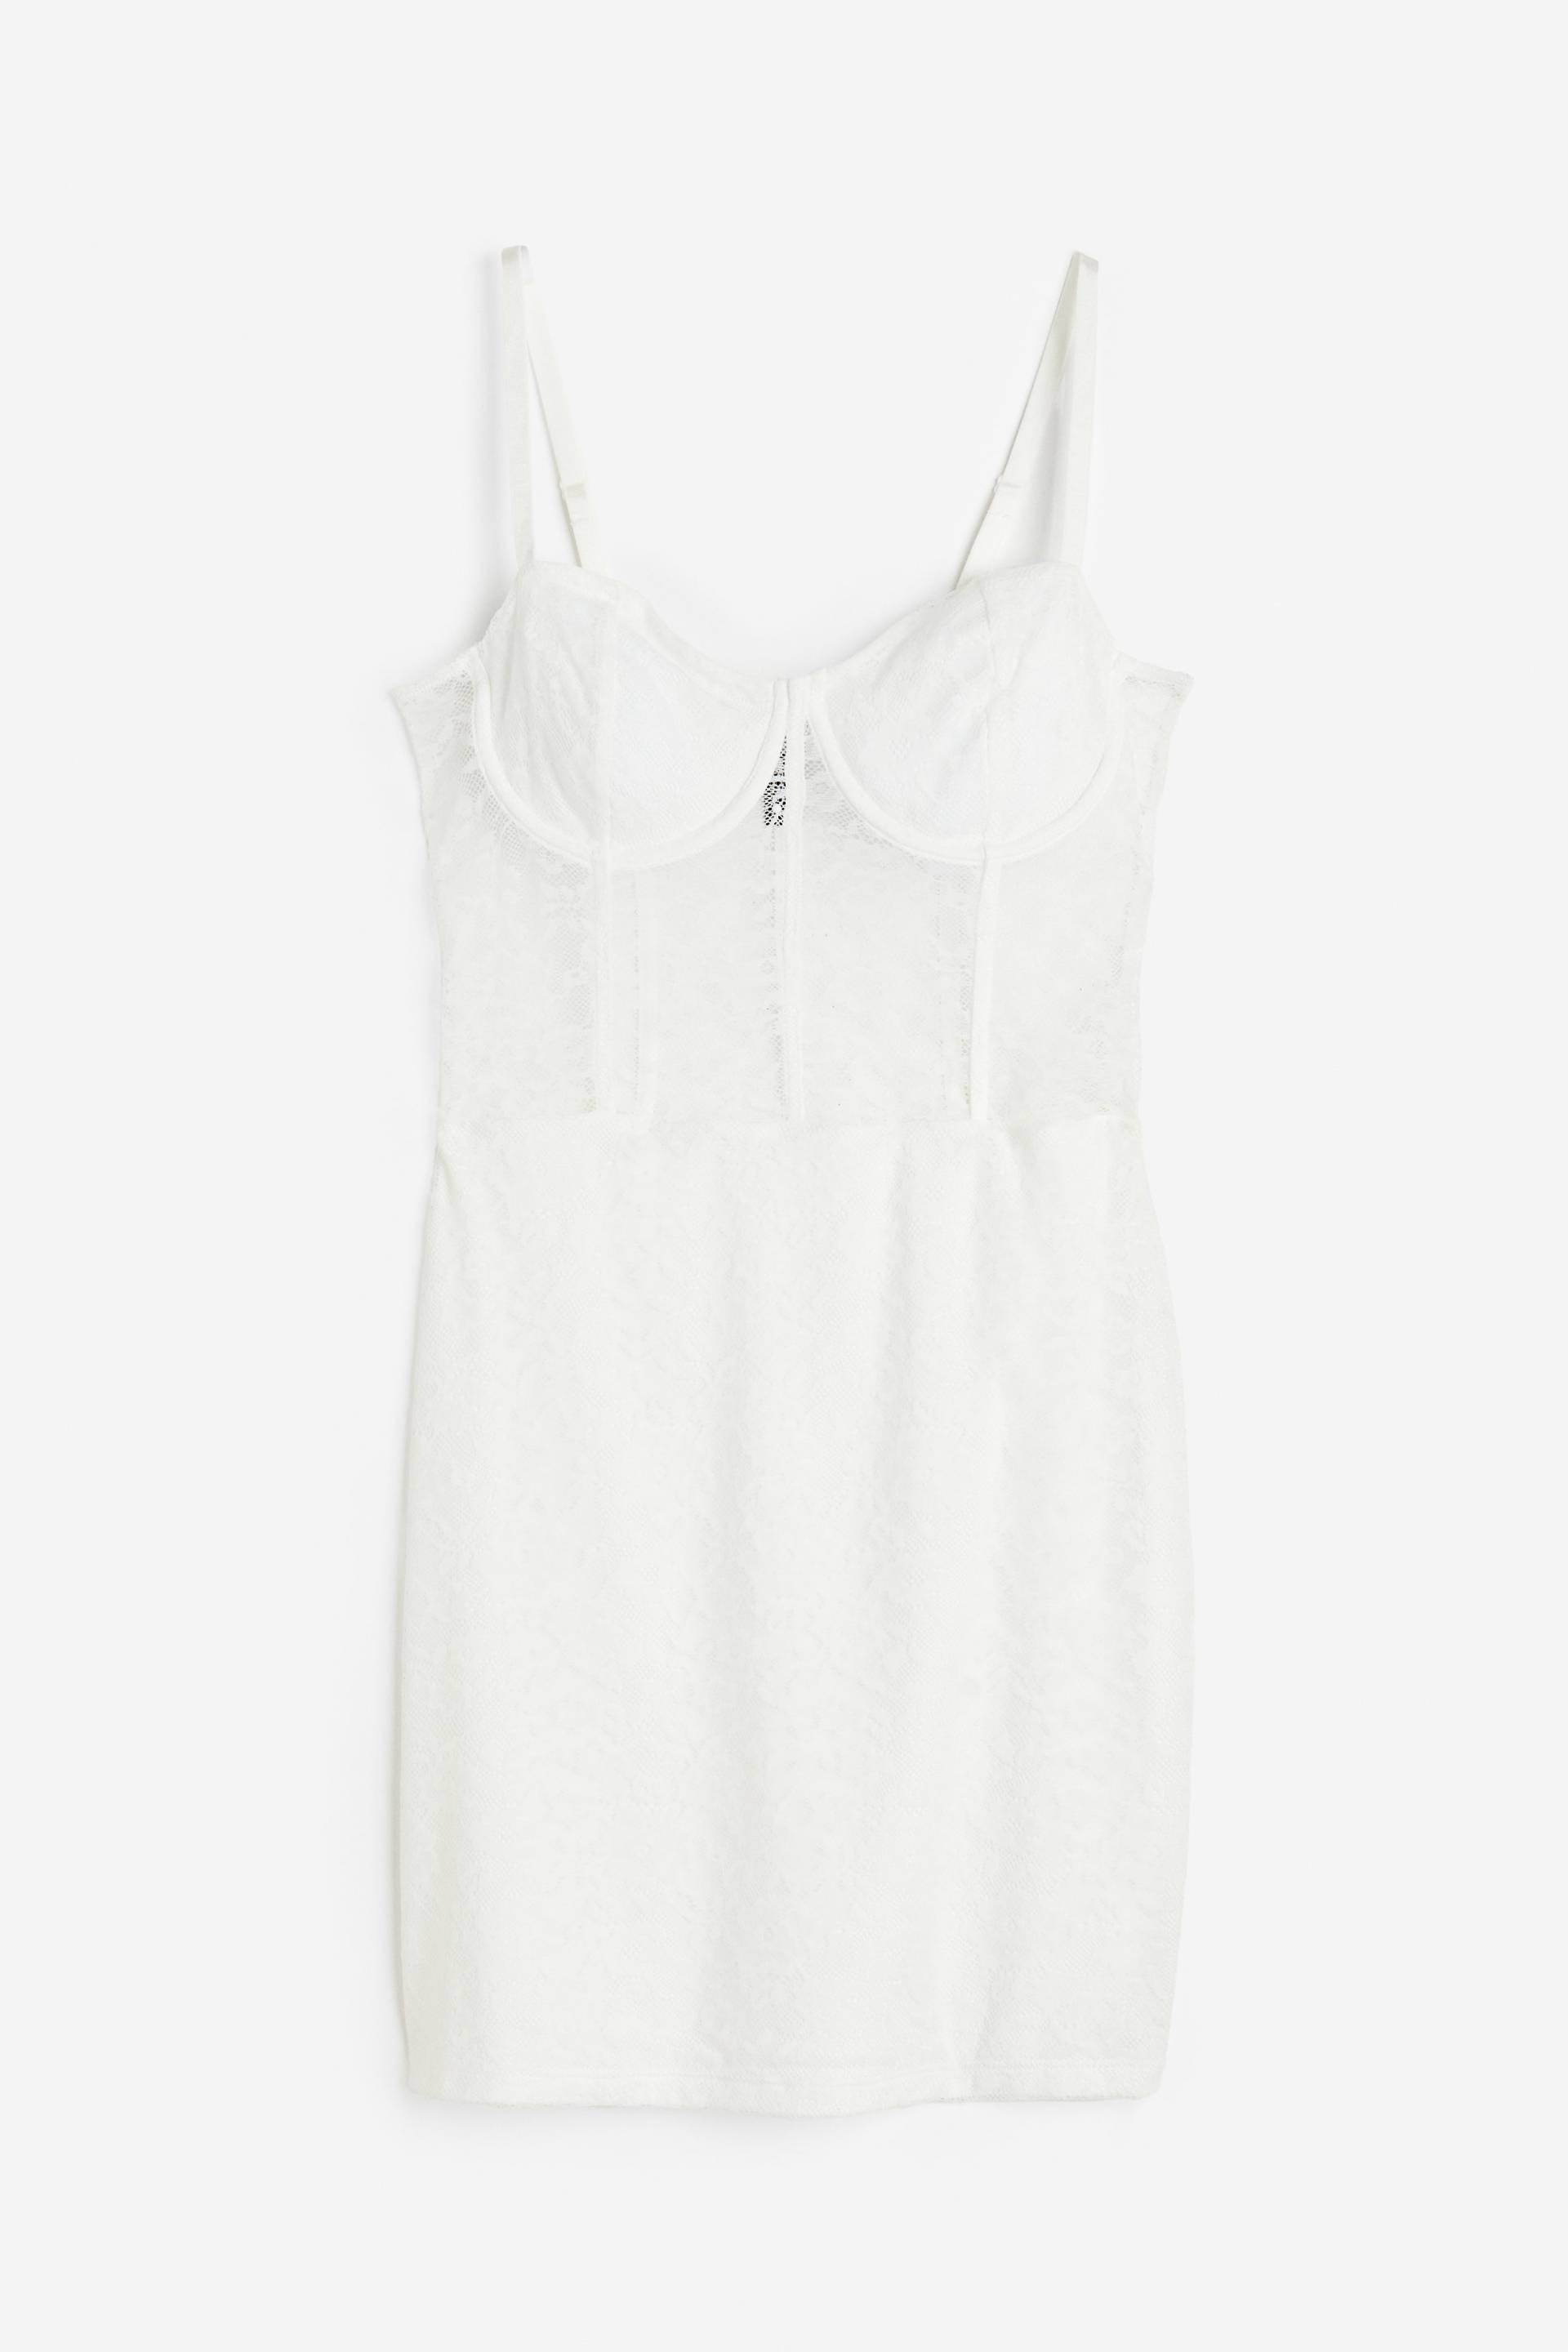 H&M Korsagenkleid aus Spitze Weiß, Party kleider in Größe M. Farbe: White von H&M